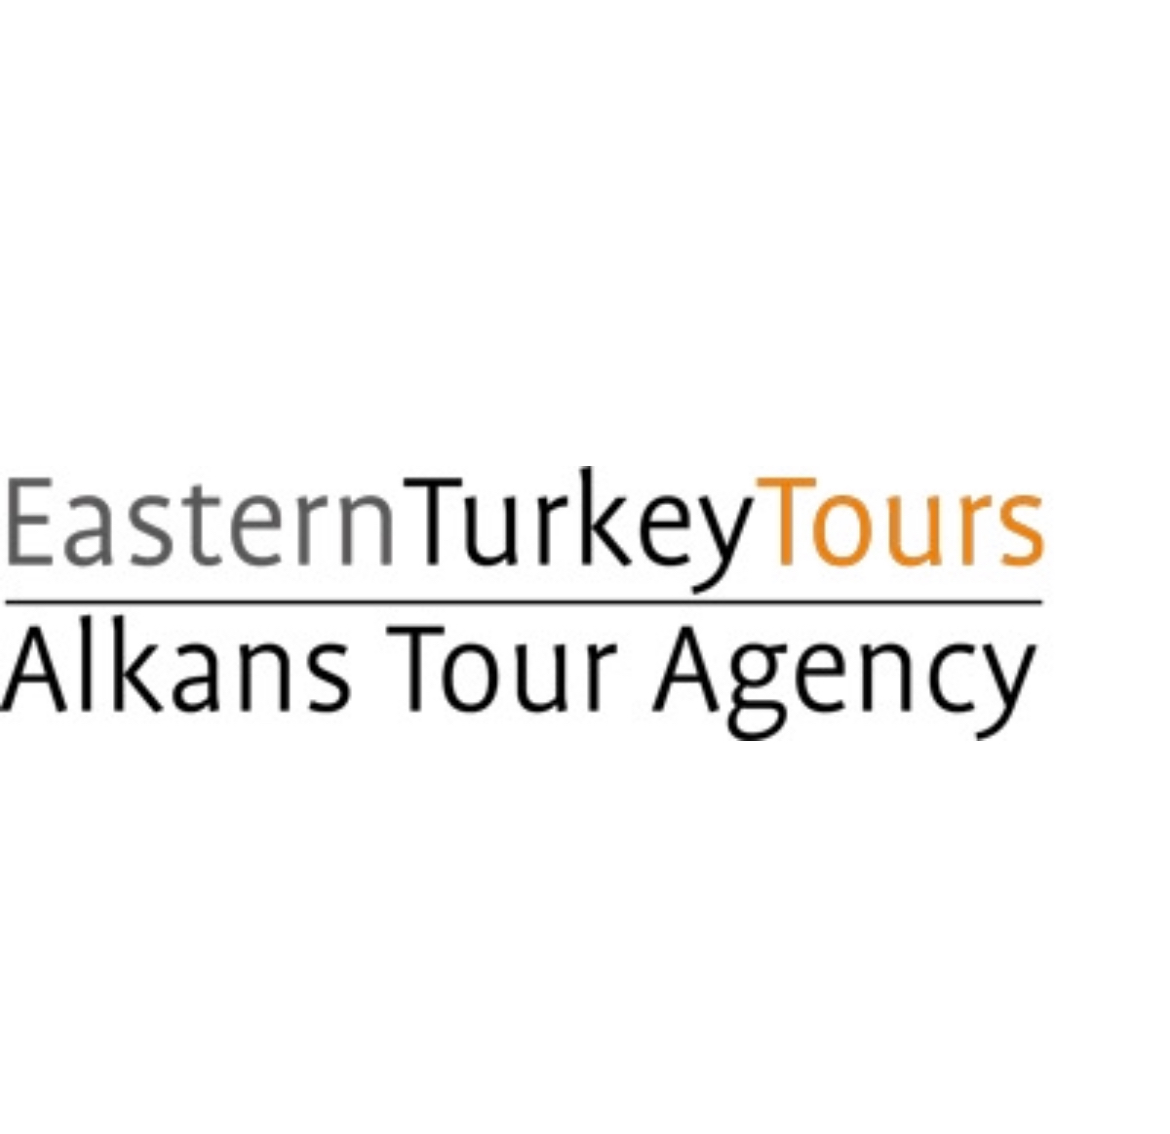 Alkans Tour